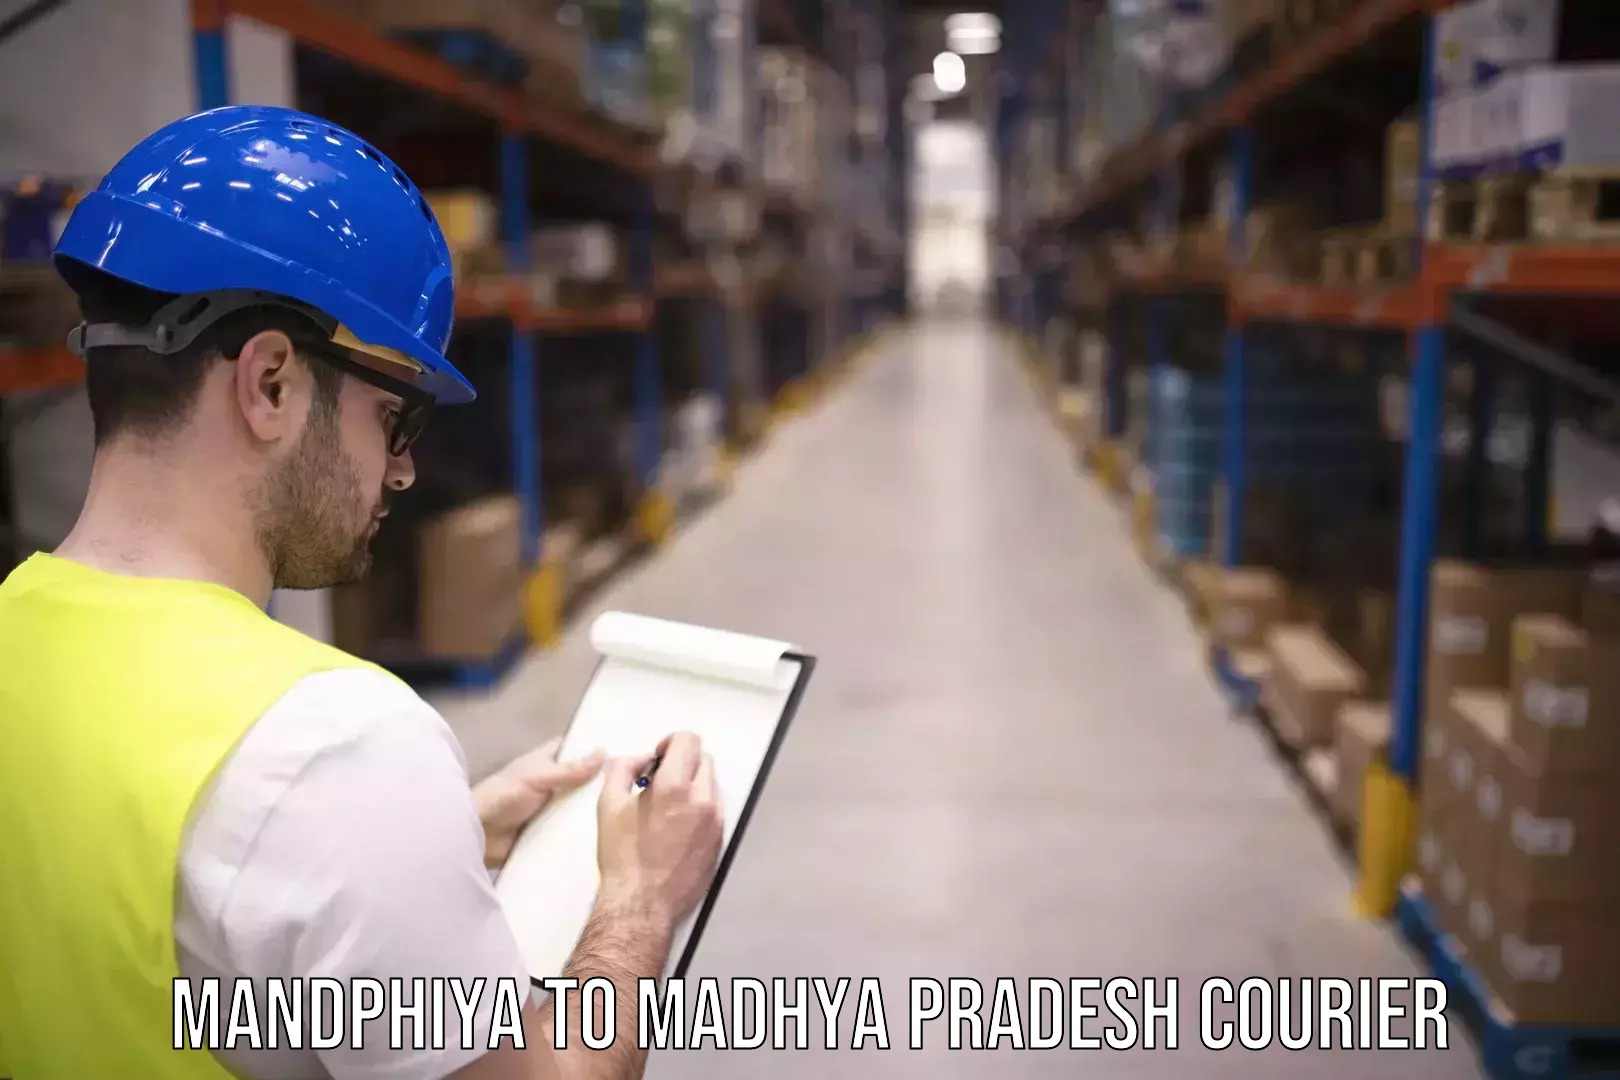 Fast-track shipping solutions Mandphiya to Rehli